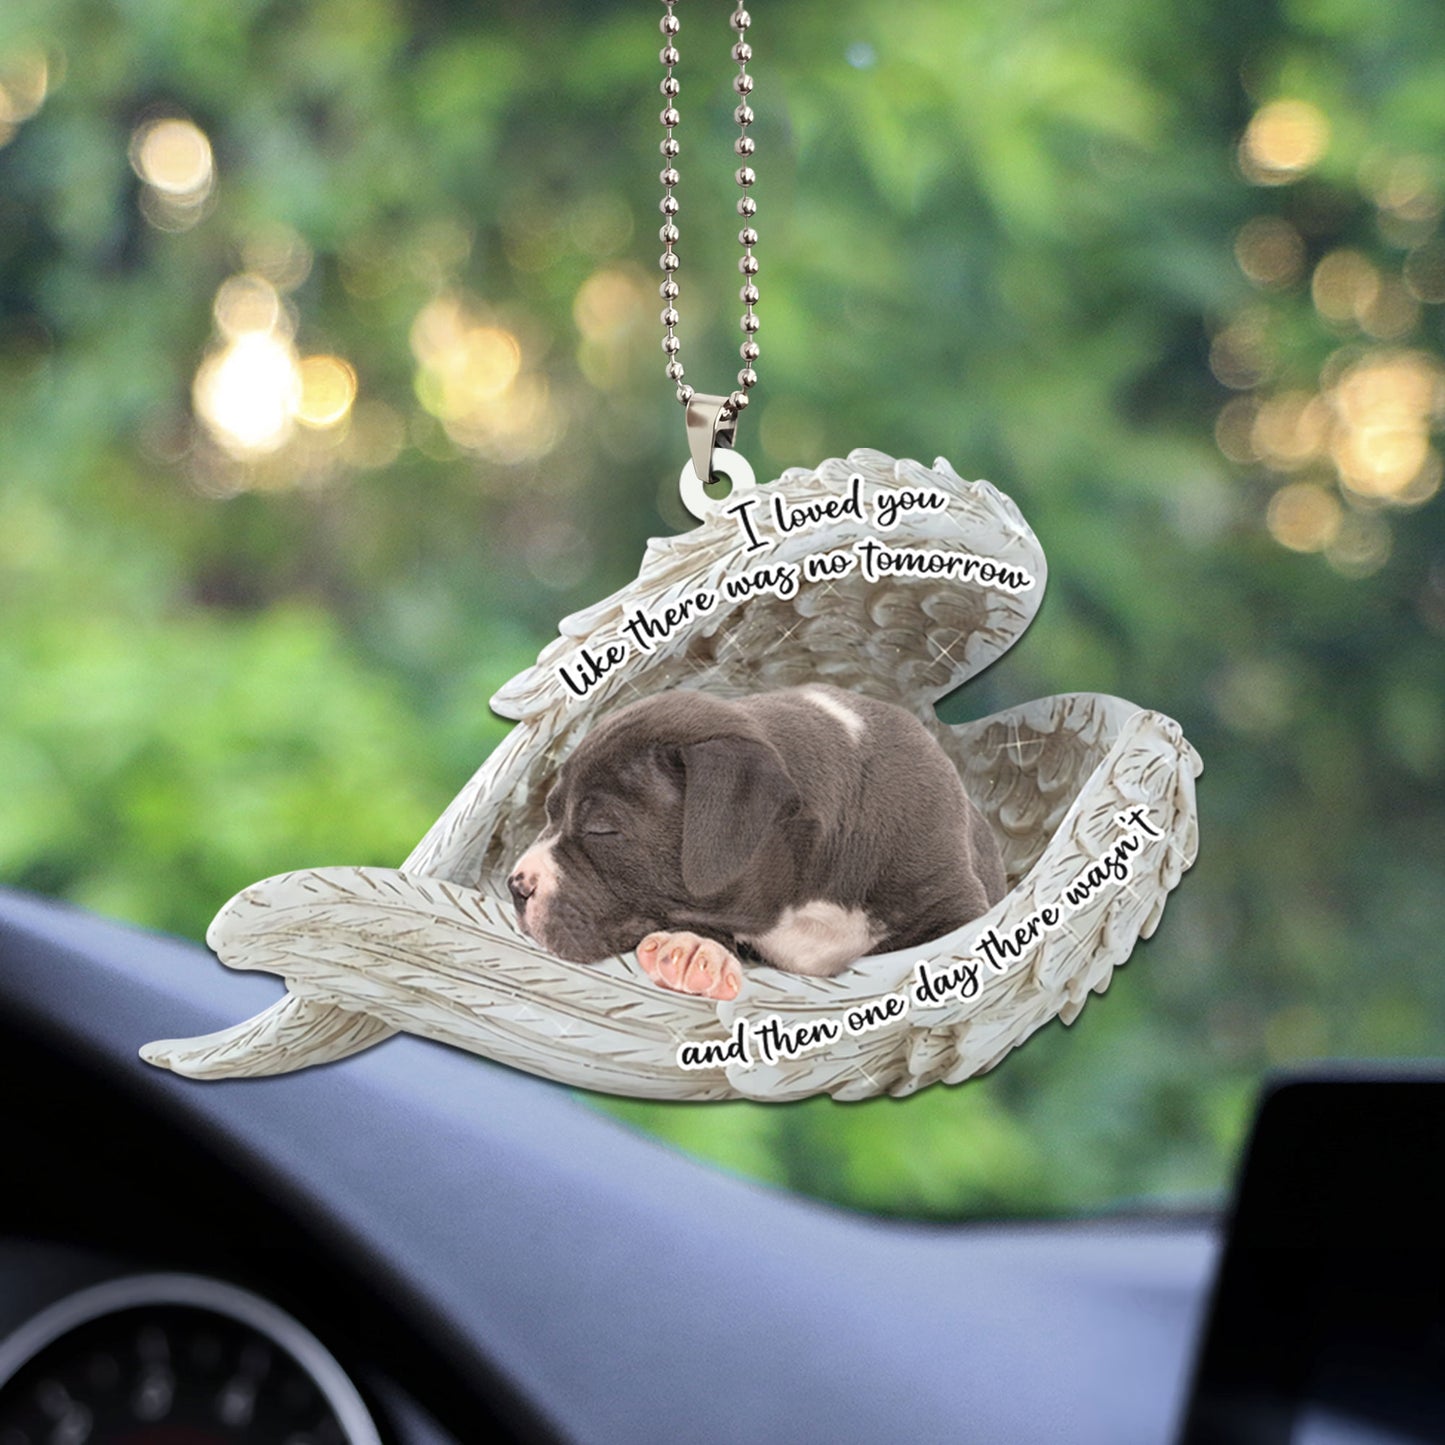 American Bulldog Sleeping Angel Personalizedwitch Flat Car Ornament